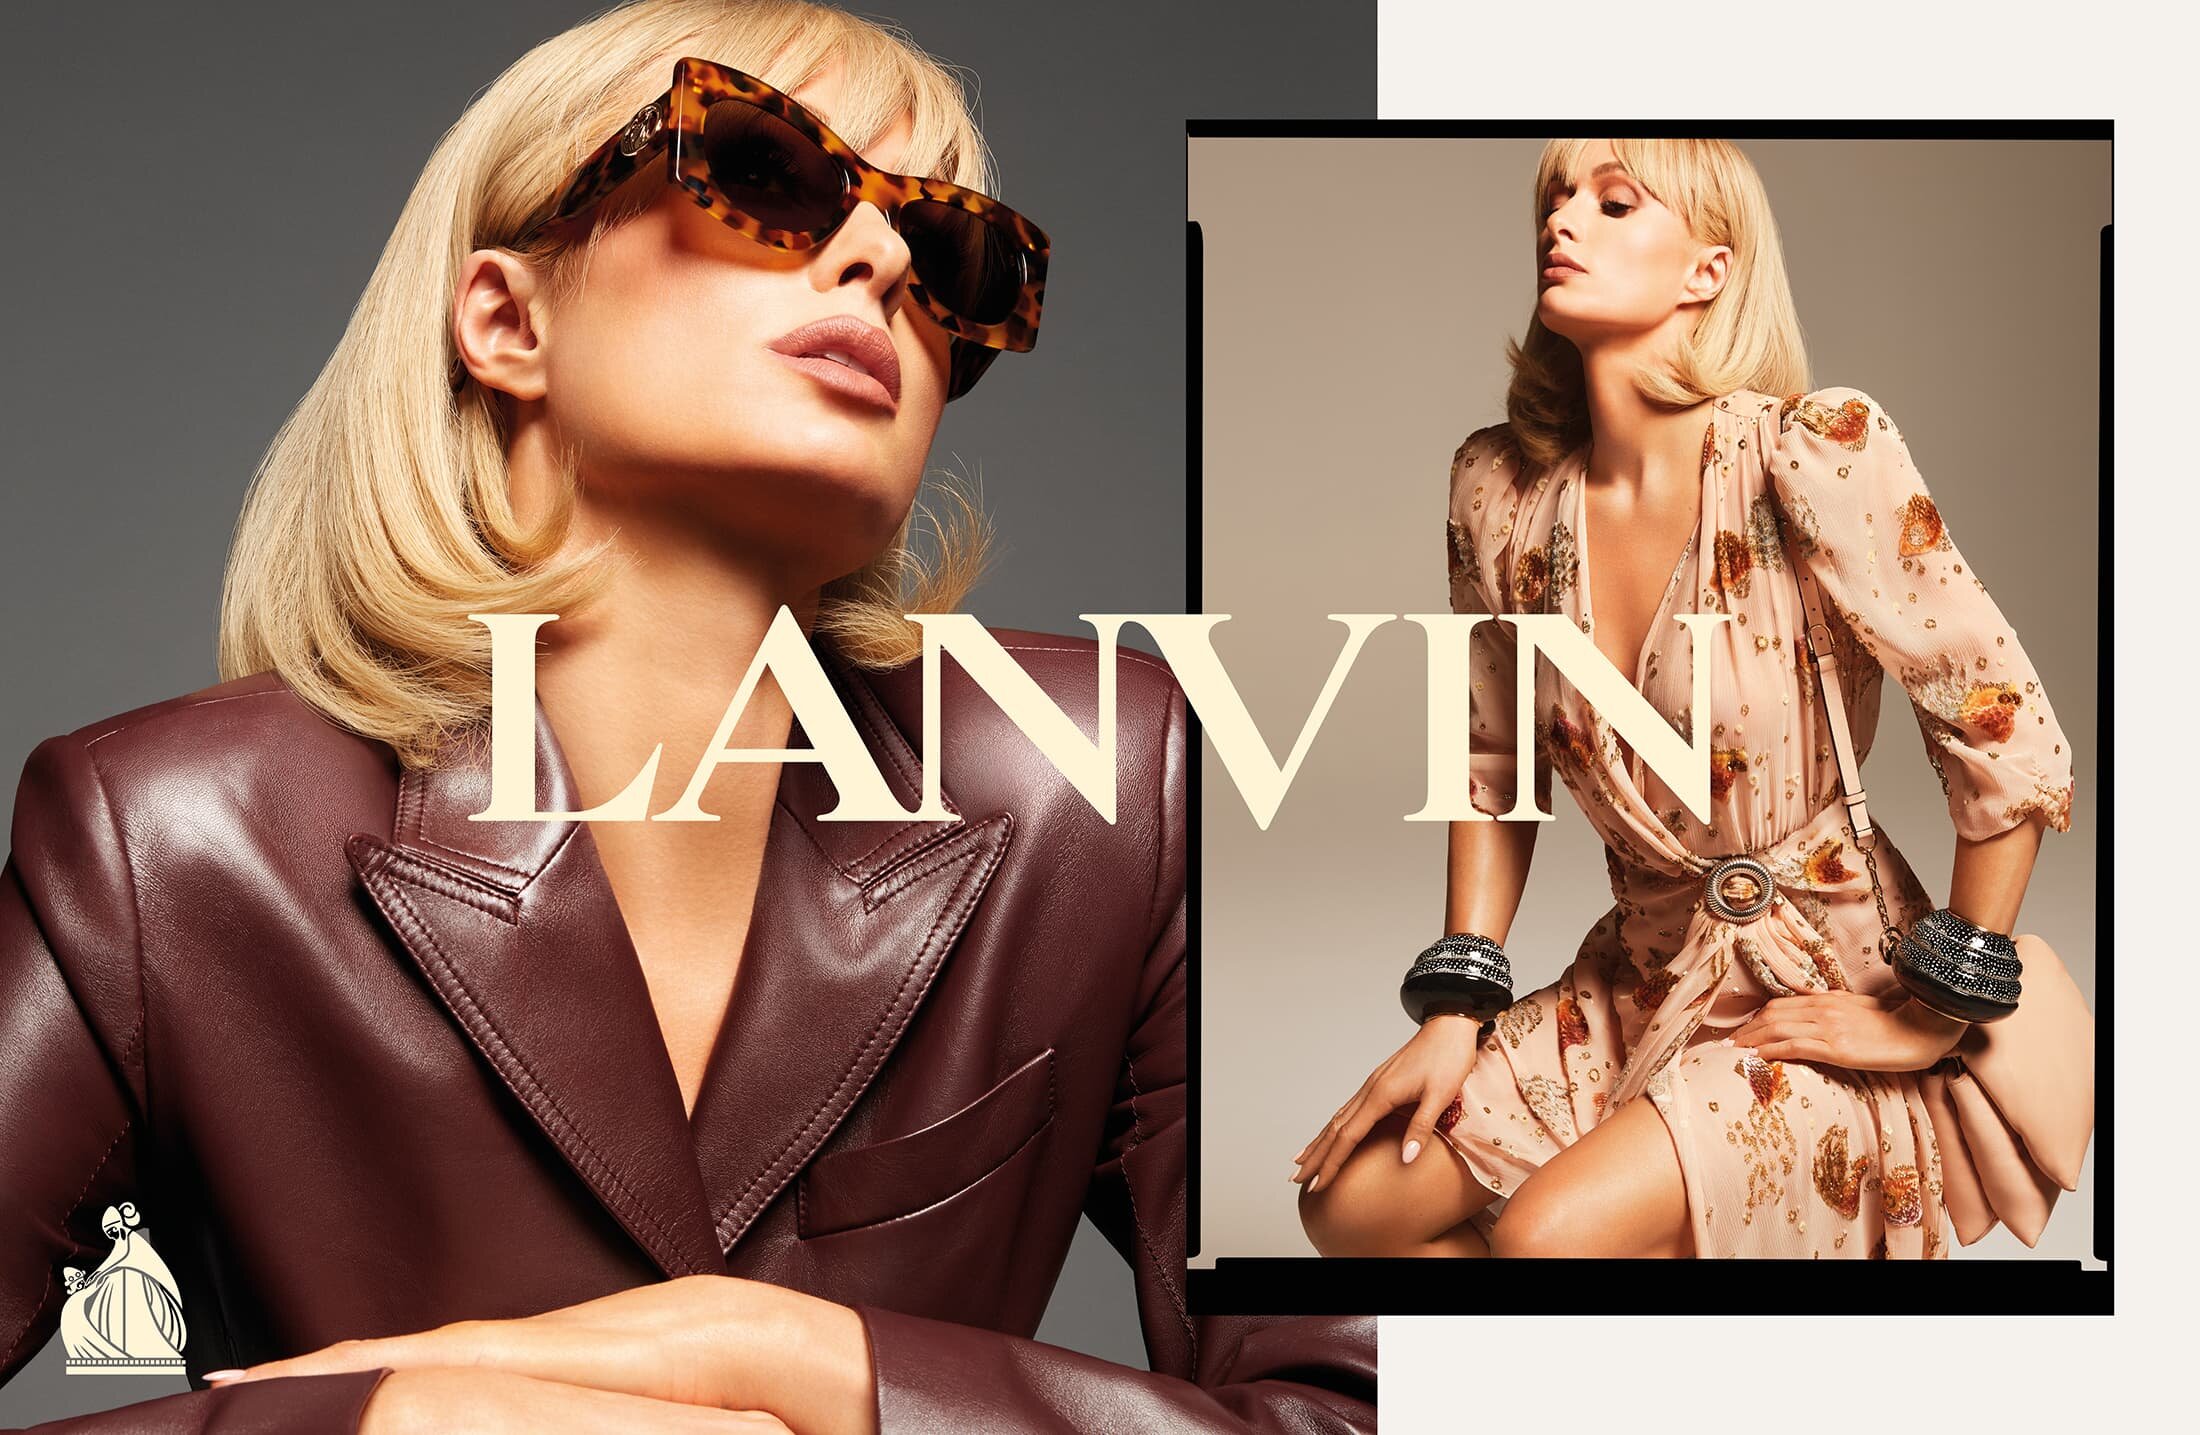 Paris Hilton by Mert Marcus Lanvin Sp 2021 Campaign (6).jpg